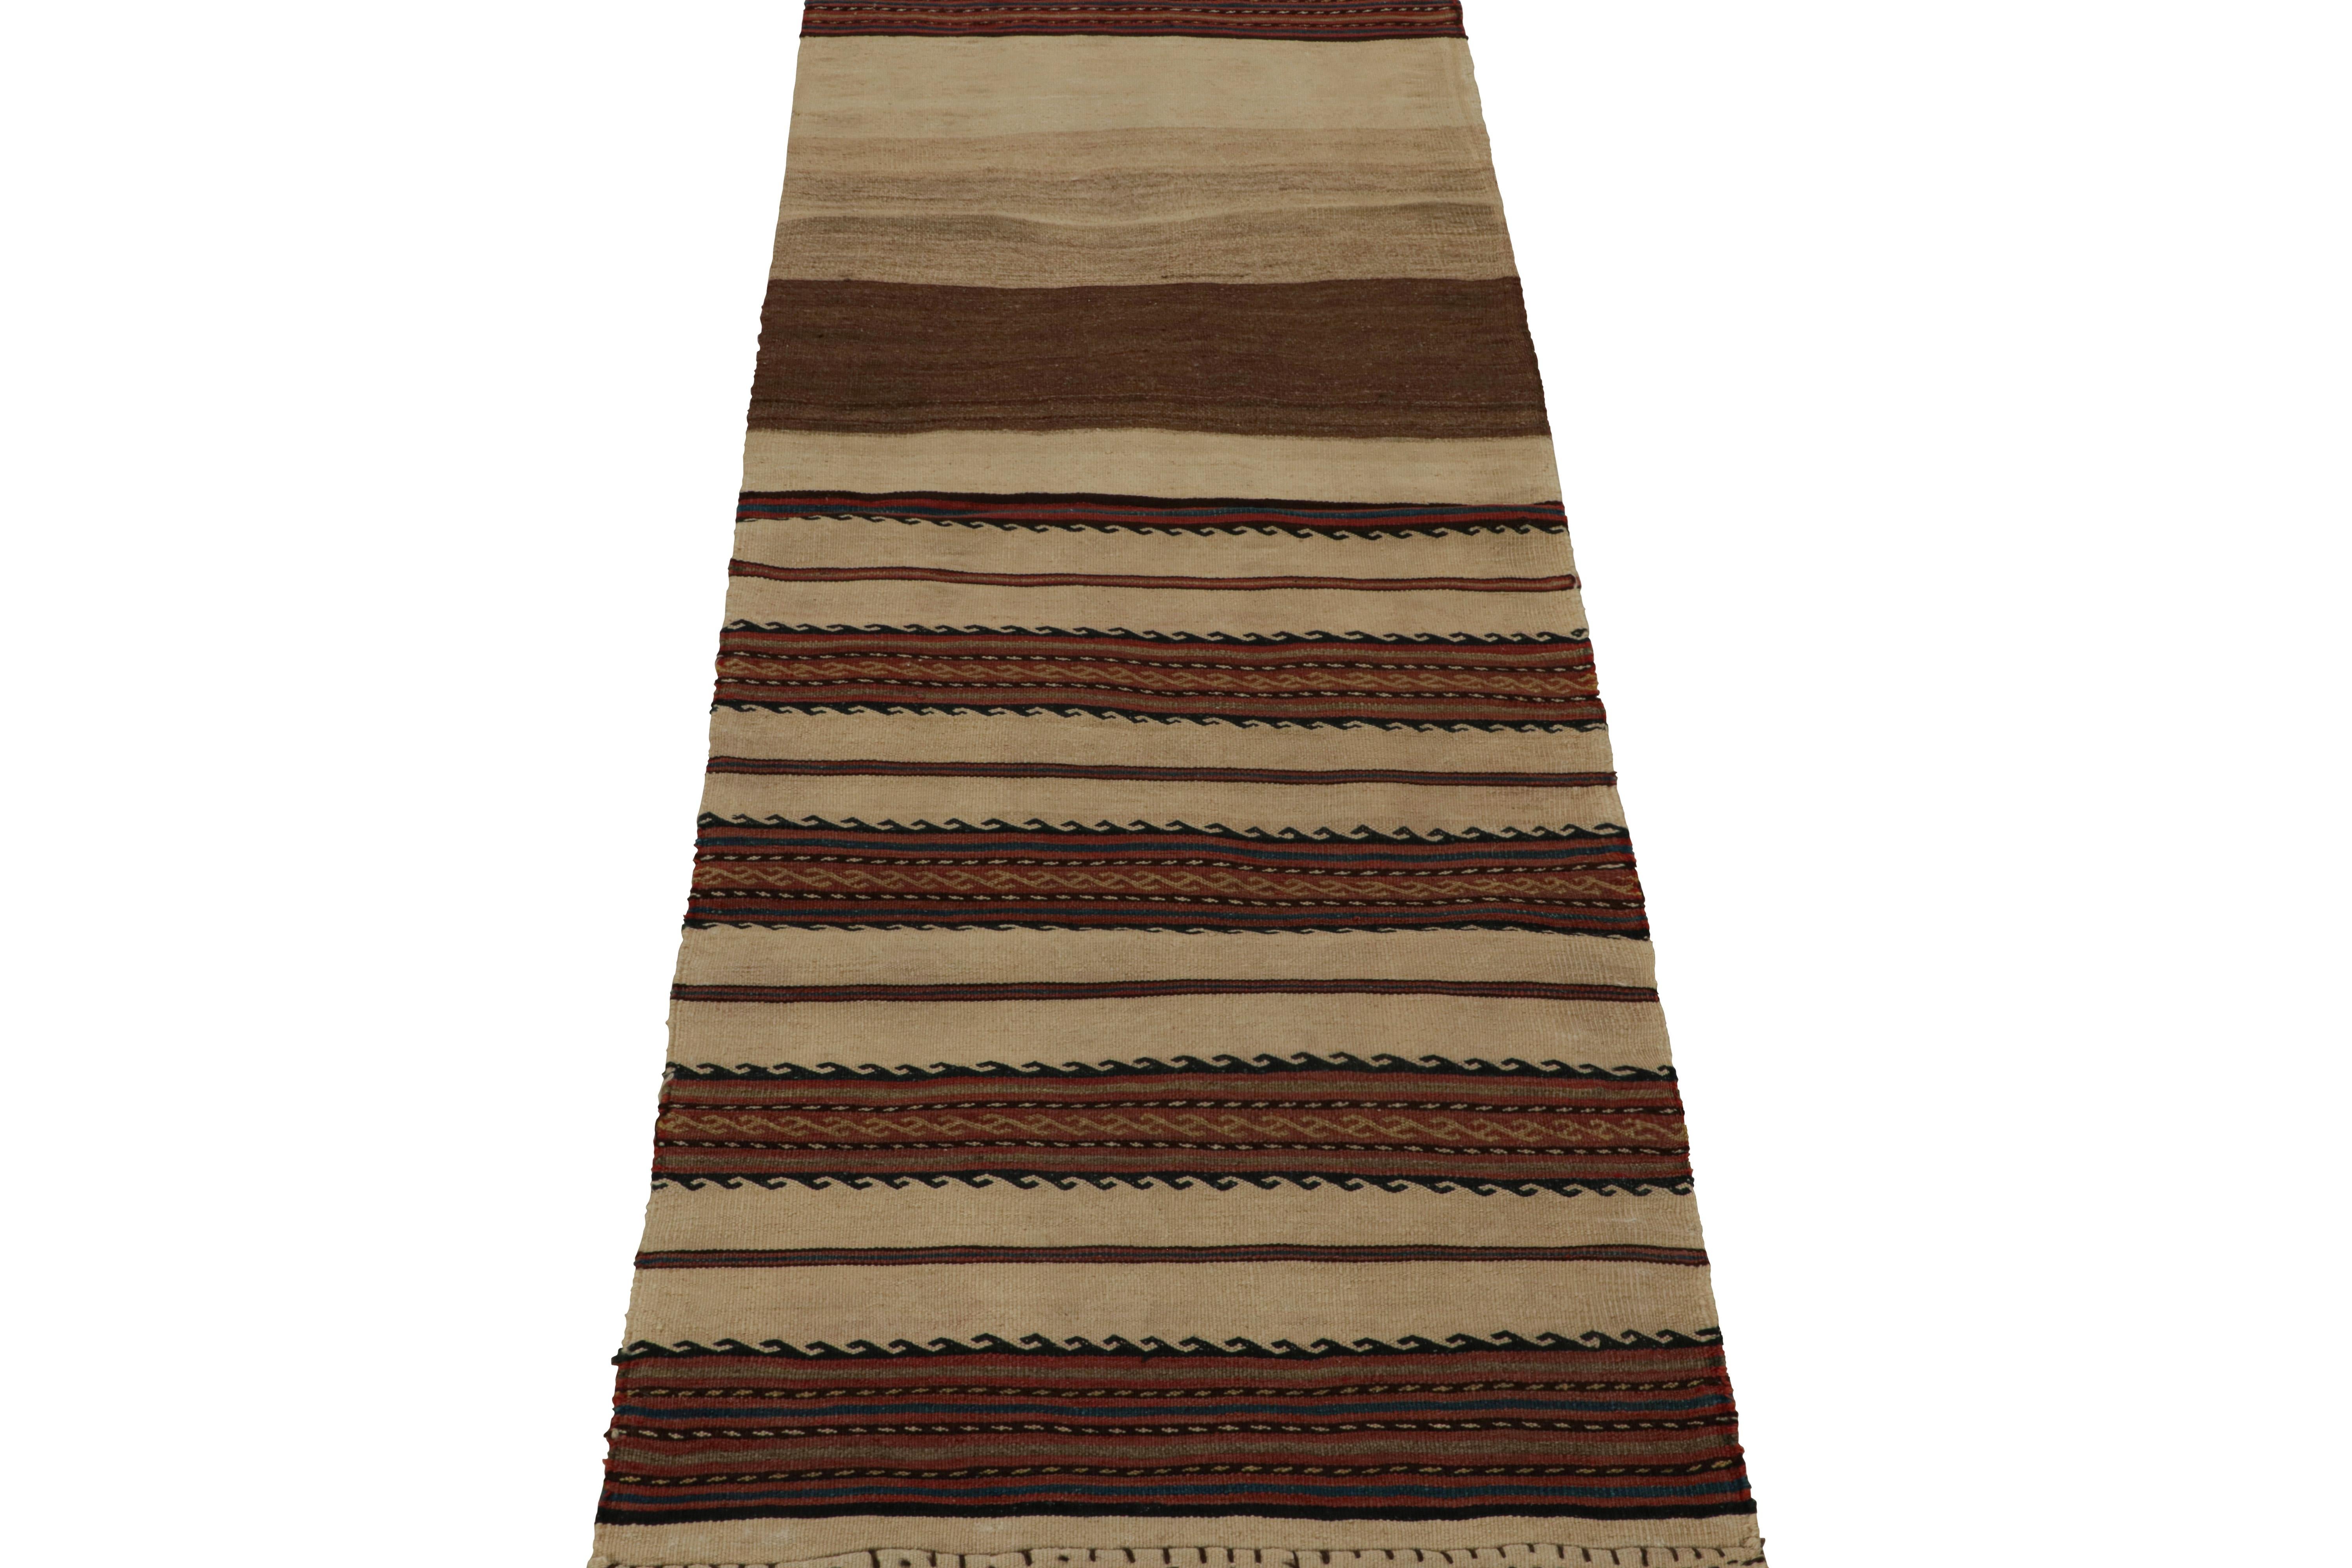 Tribal Vintage Afghani tribal Kilim runner rug, in Beige/brown, from Rug & Kilim For Sale